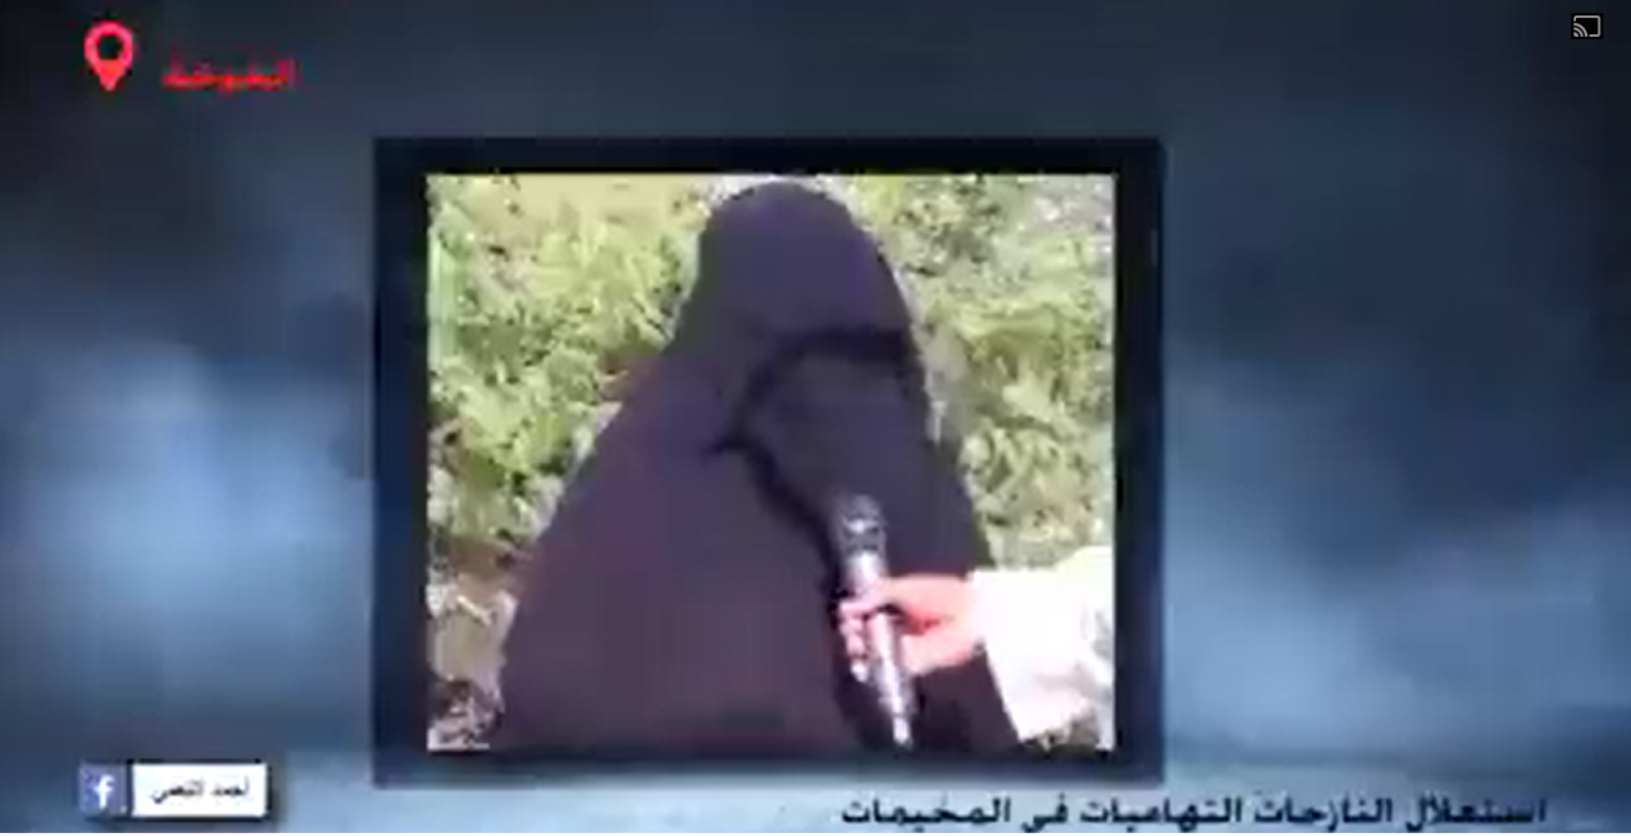 بالفيديو.....إعتداءات جنسية وممارسة الجنس بالإكراه مع فتيات يمنيات من قبل ذئاب المنظمات ودورها المشبوه واللإنساني في اليمن